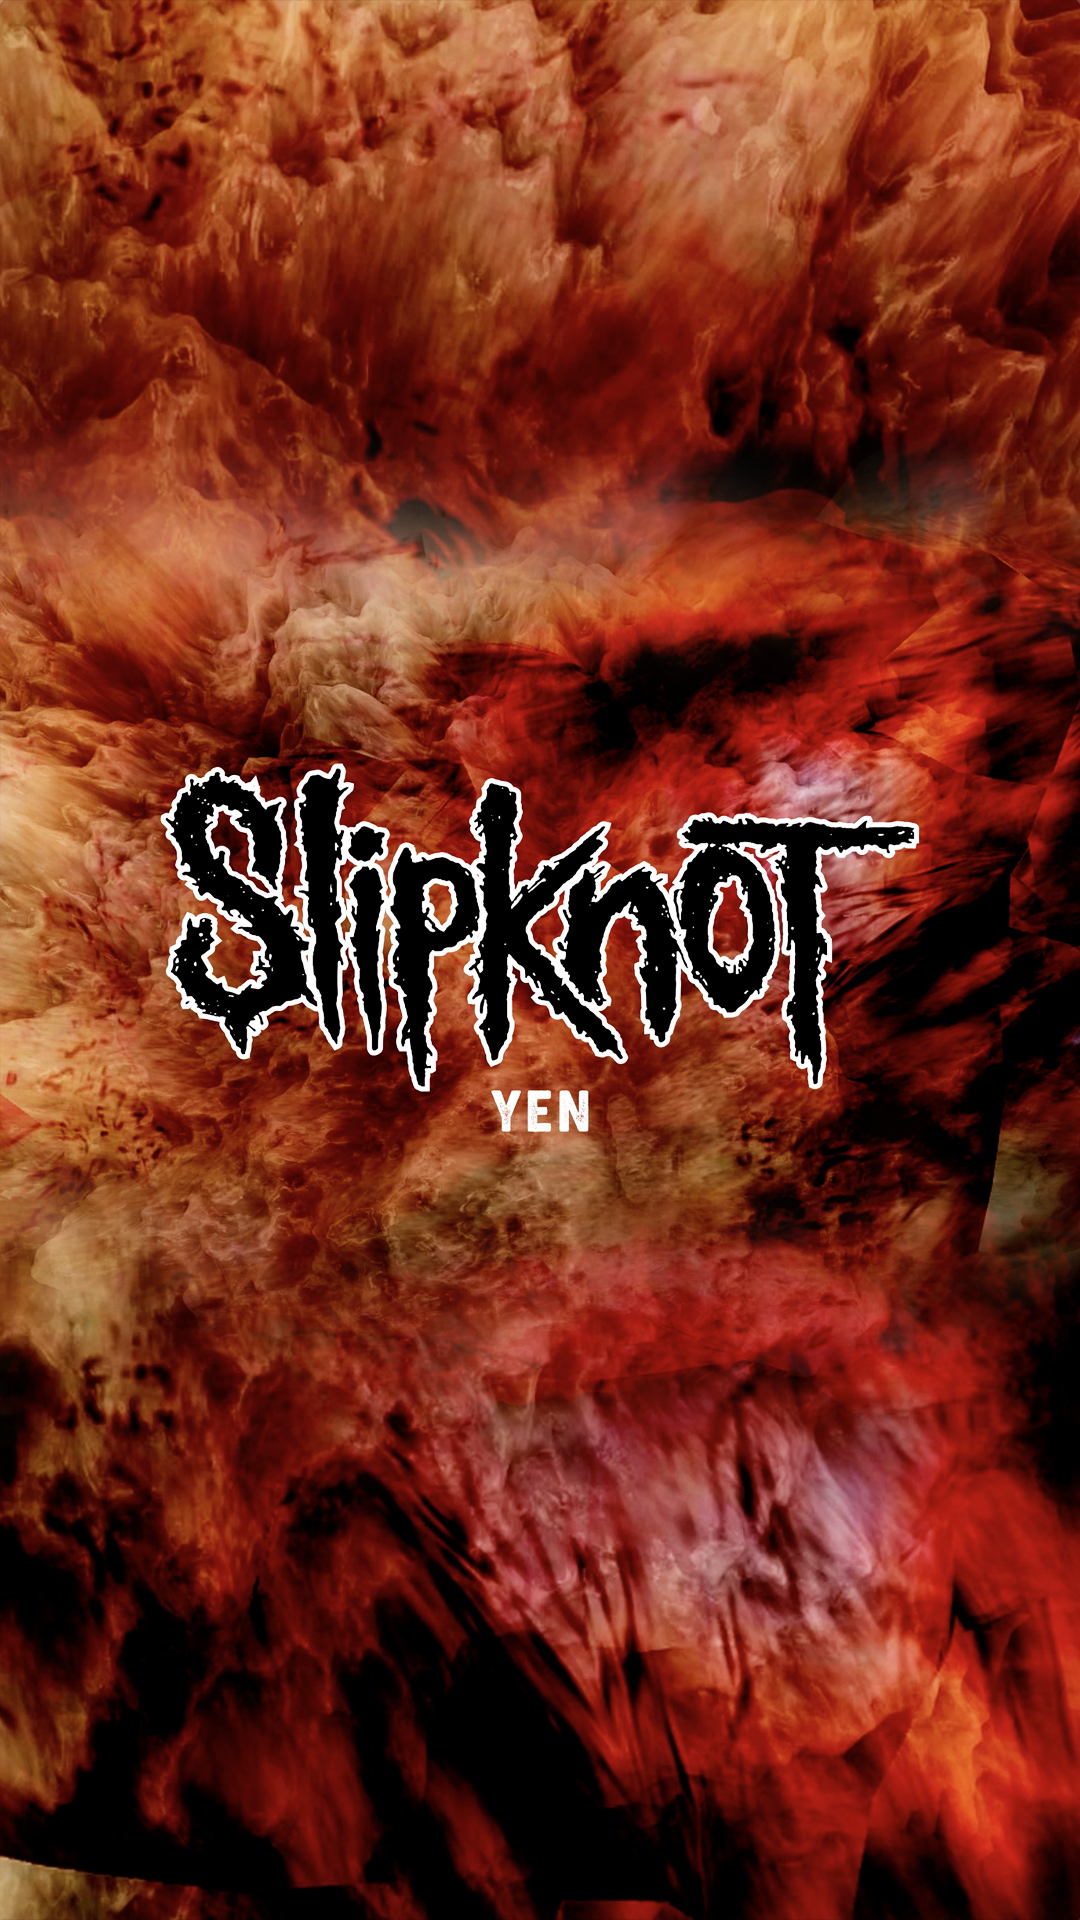 SLIPKNOT SHARE NEW SONG “YEN”